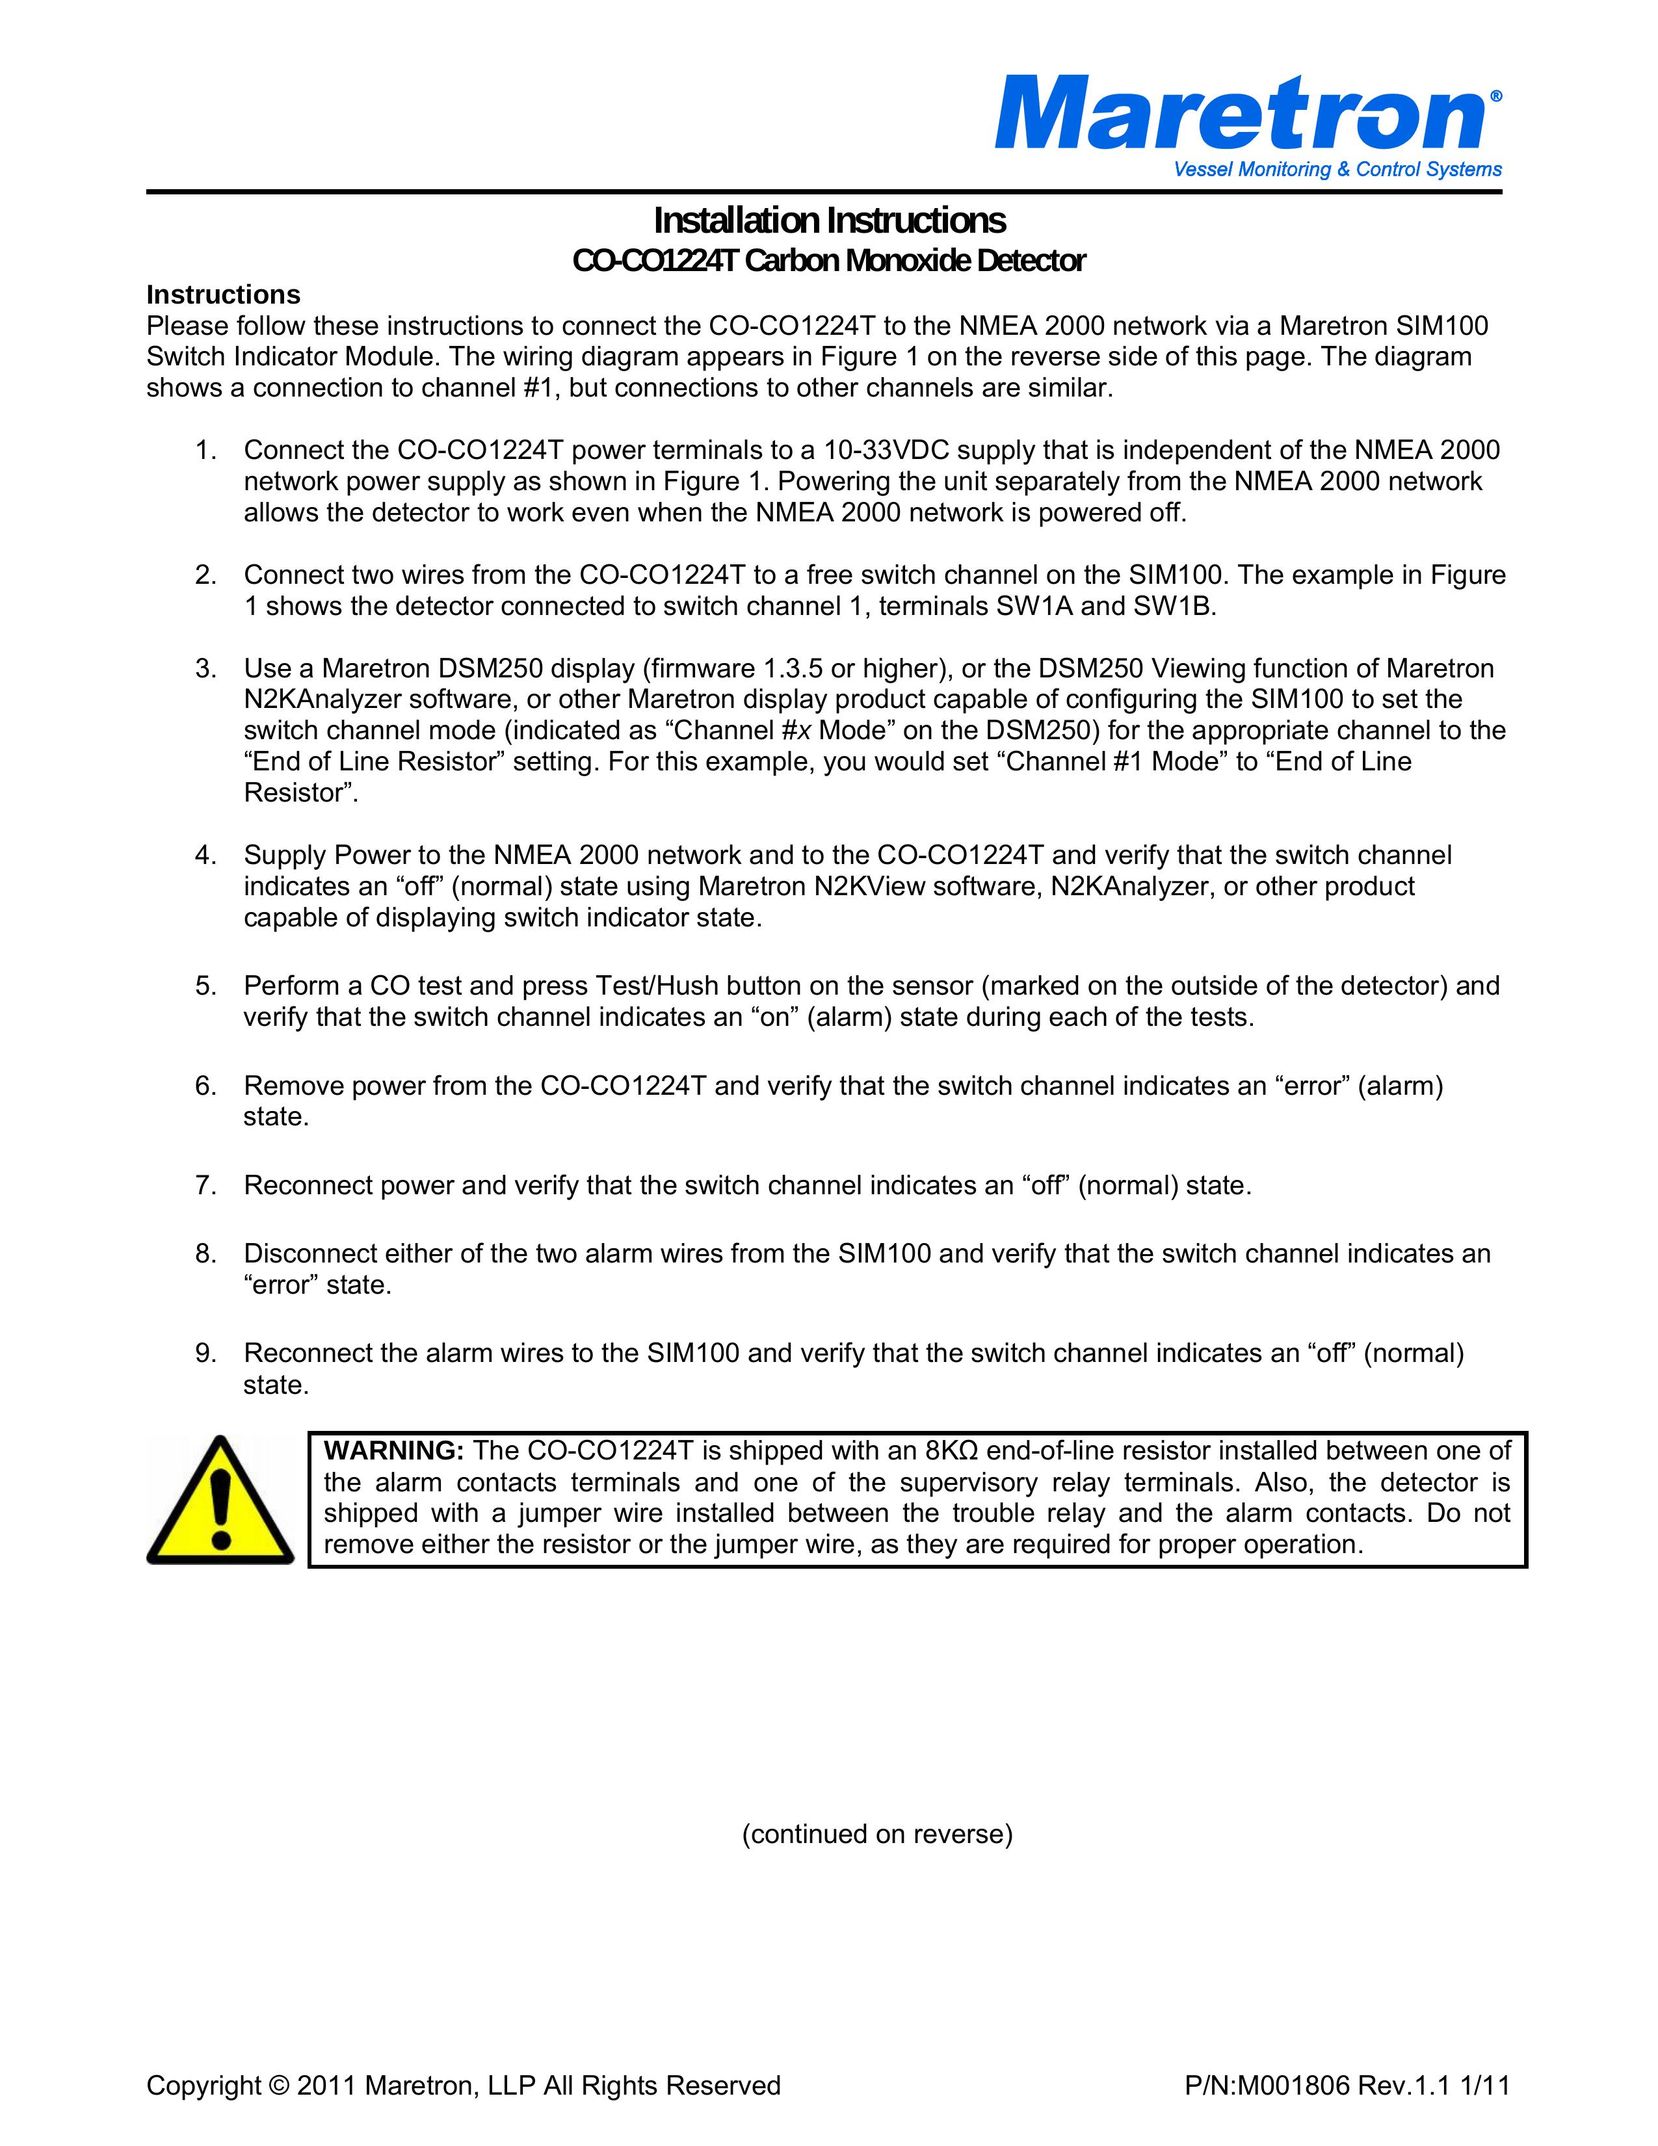 Maretron CO-CO1224T Carbon Monoxide Alarm User Manual